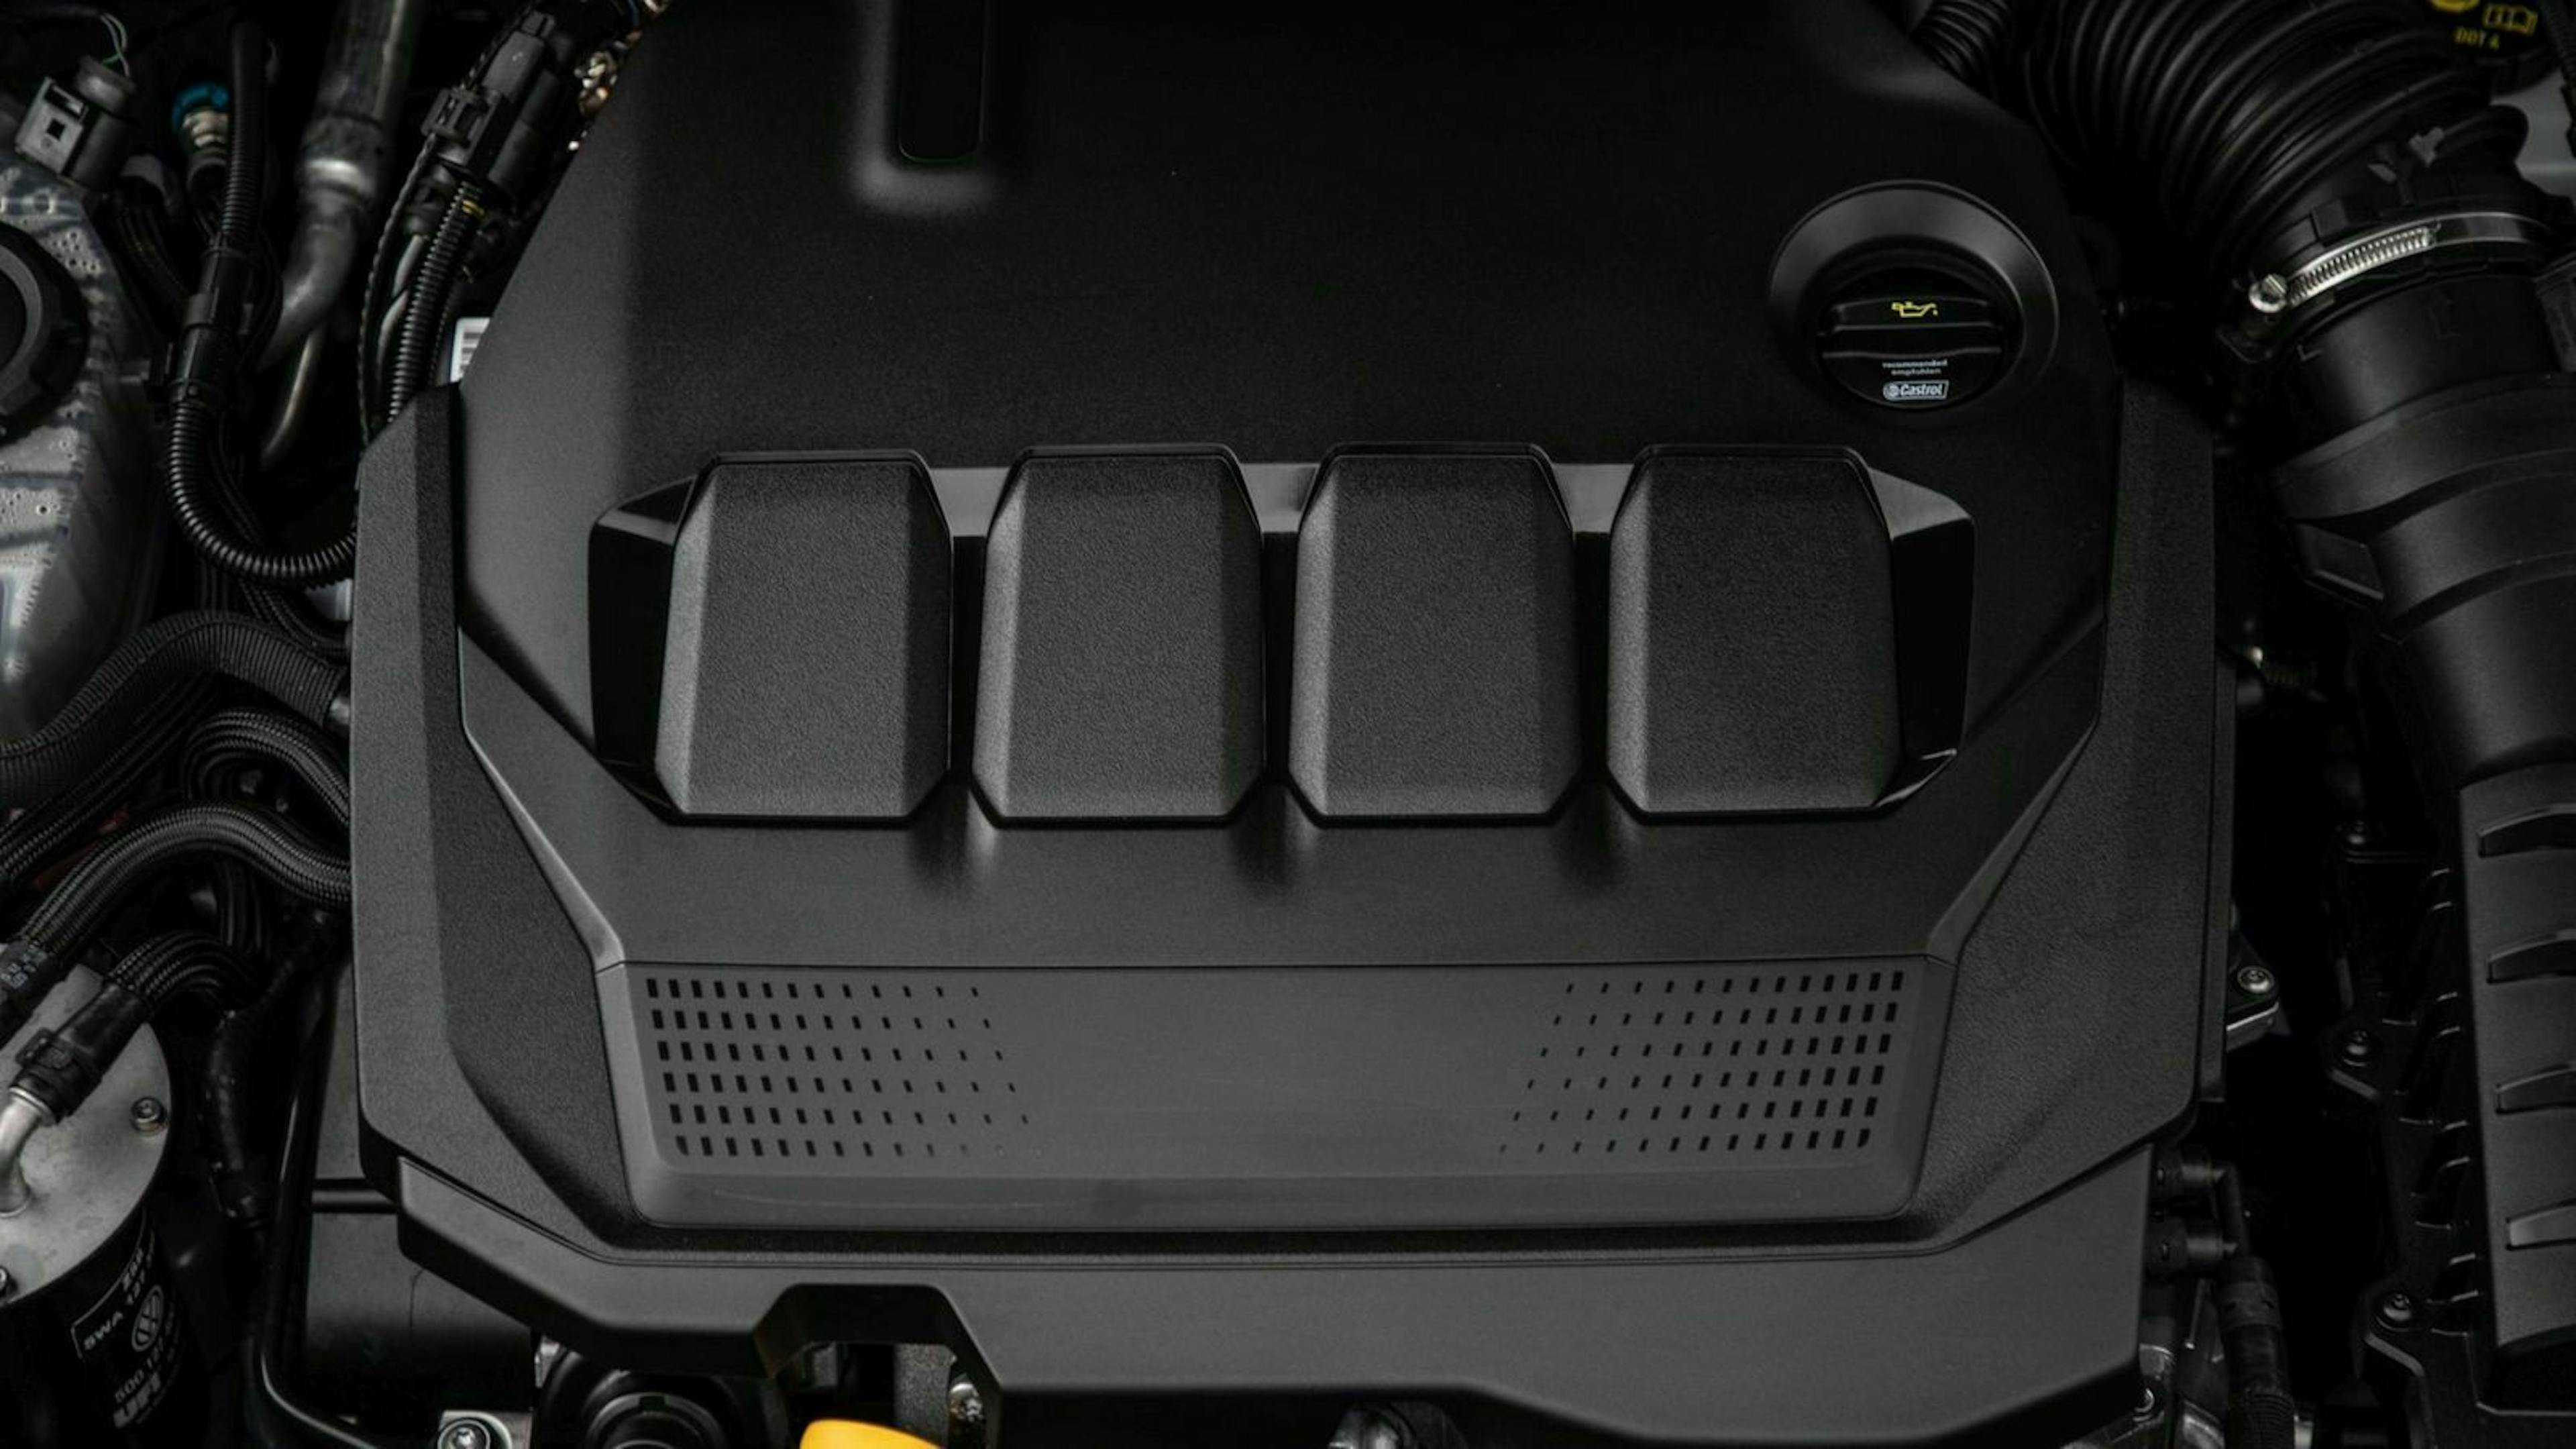 Zu sehen ist der Motor des gelifteten Audi Q2